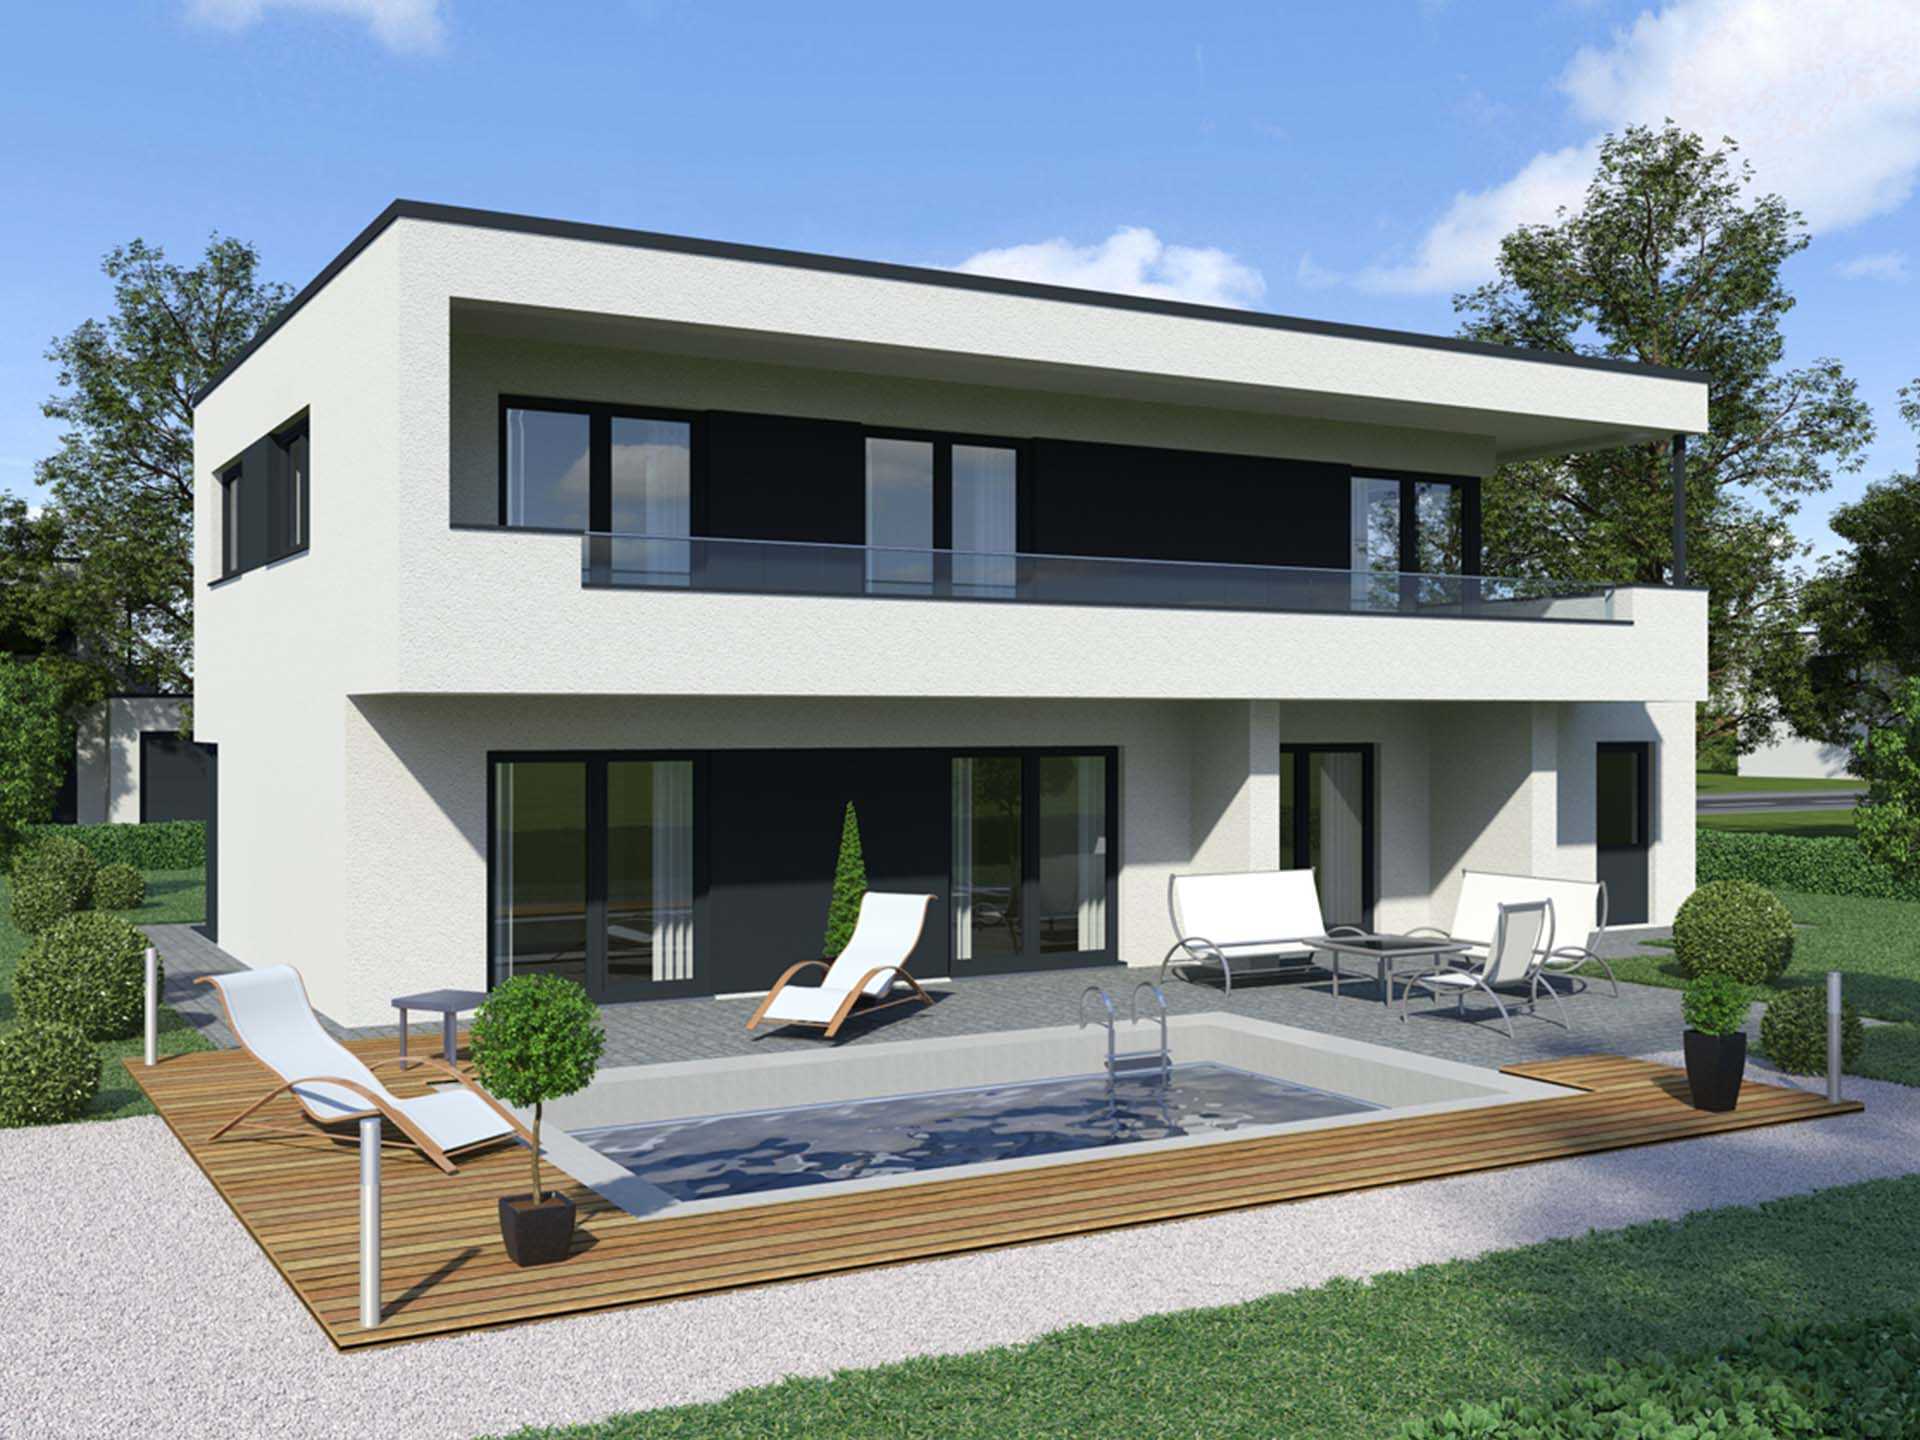 Bauberater.de - Modernes Haus mit Flachdach